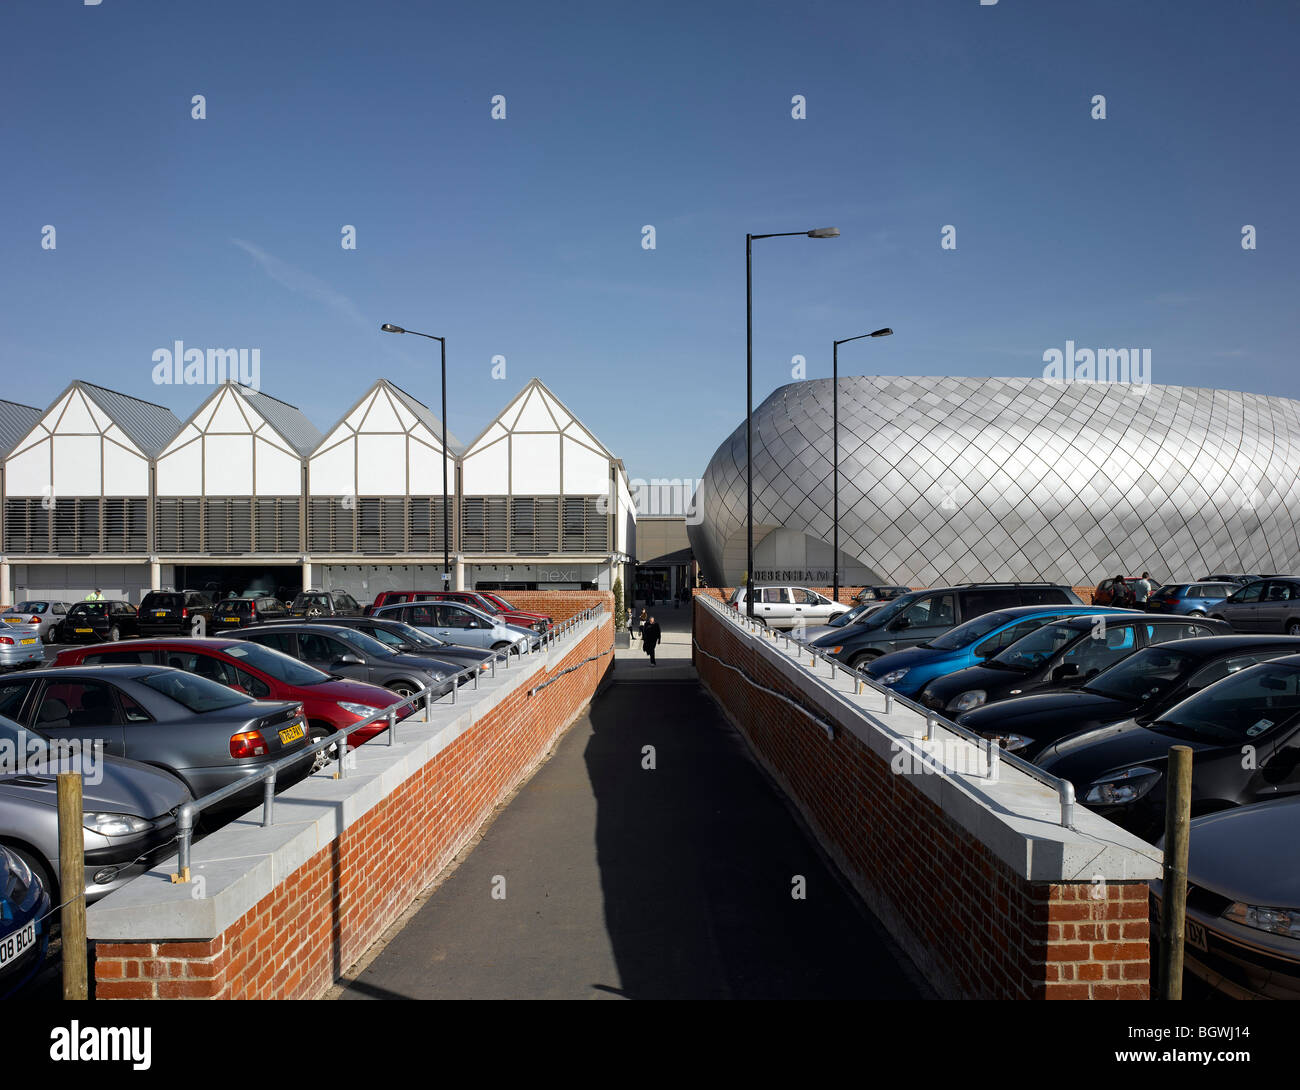 L'Arco centro shopping, Bury St Edmunds, Regno Unito, VERETEC con MICHAEL HOPKINS Foto Stock